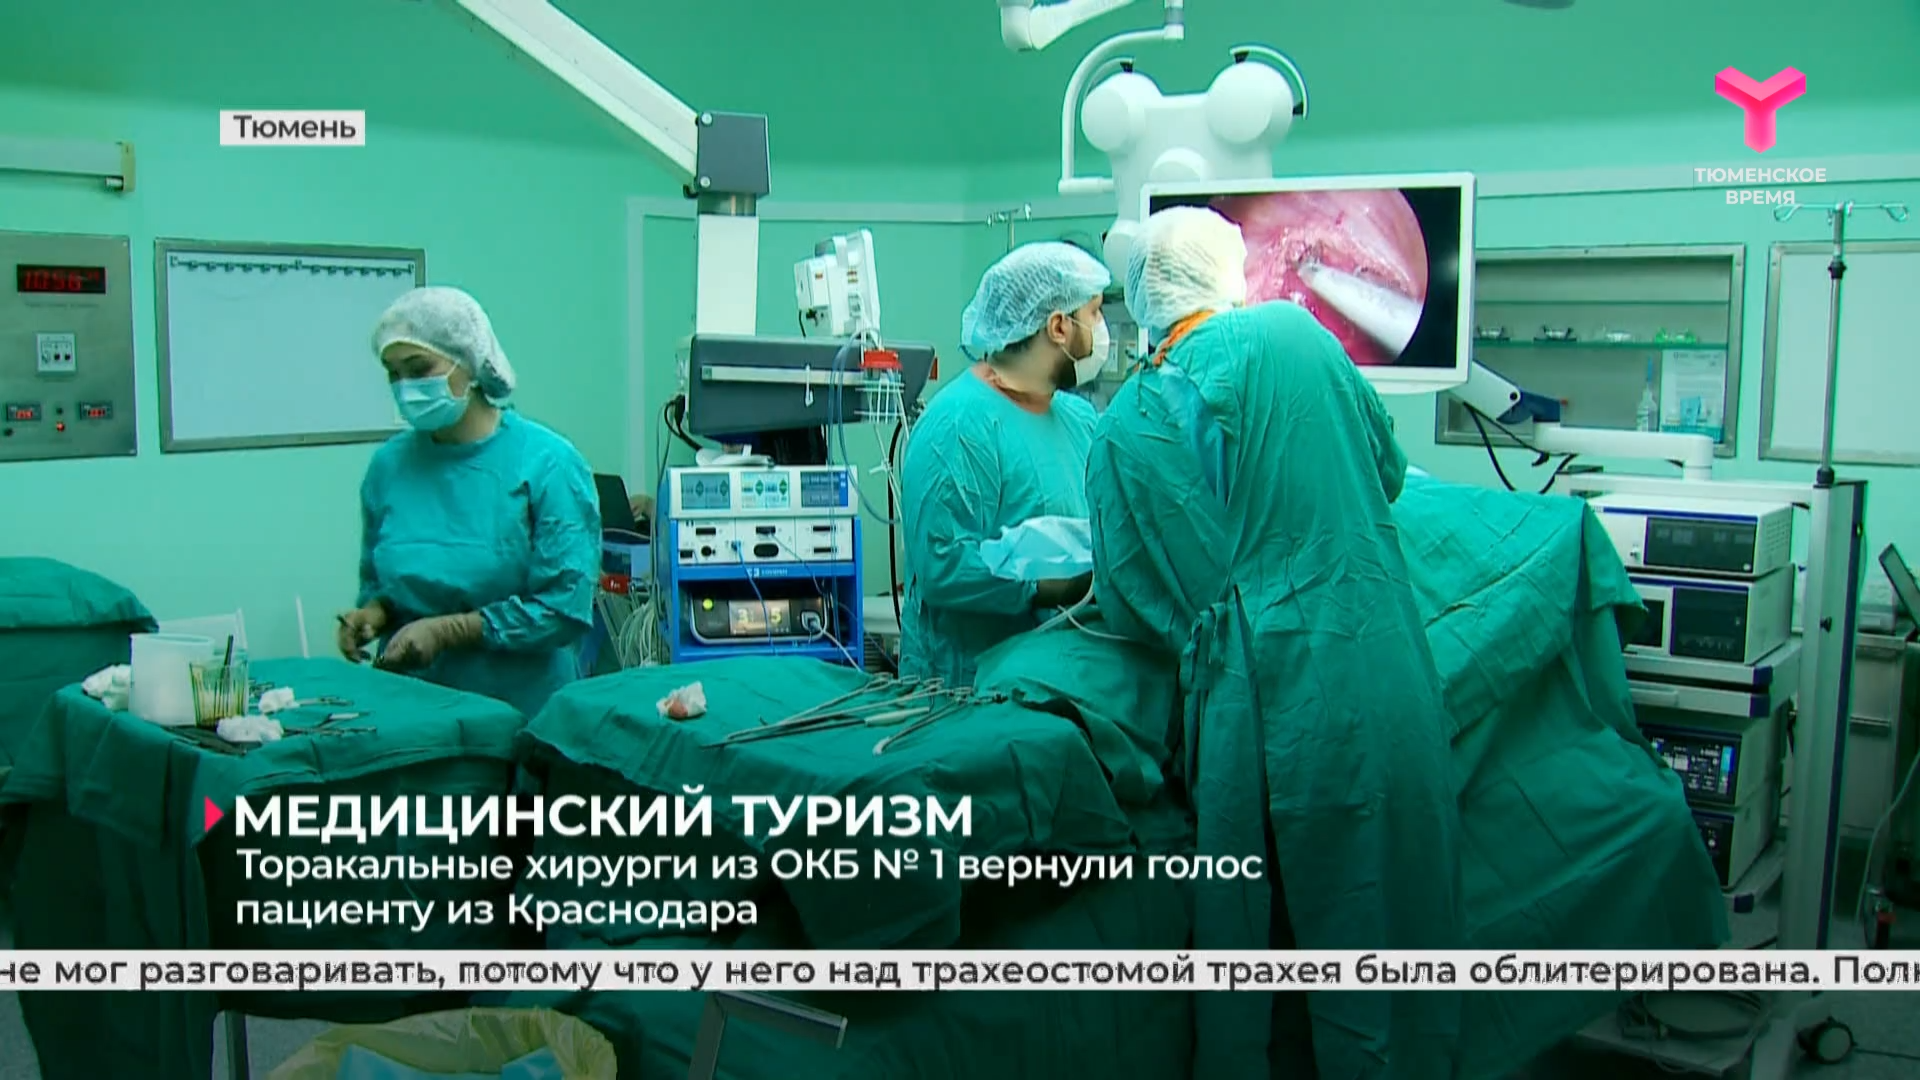 Торакальные хирурги из ОКБ № 1 вернули голос пациенту из Краснодара